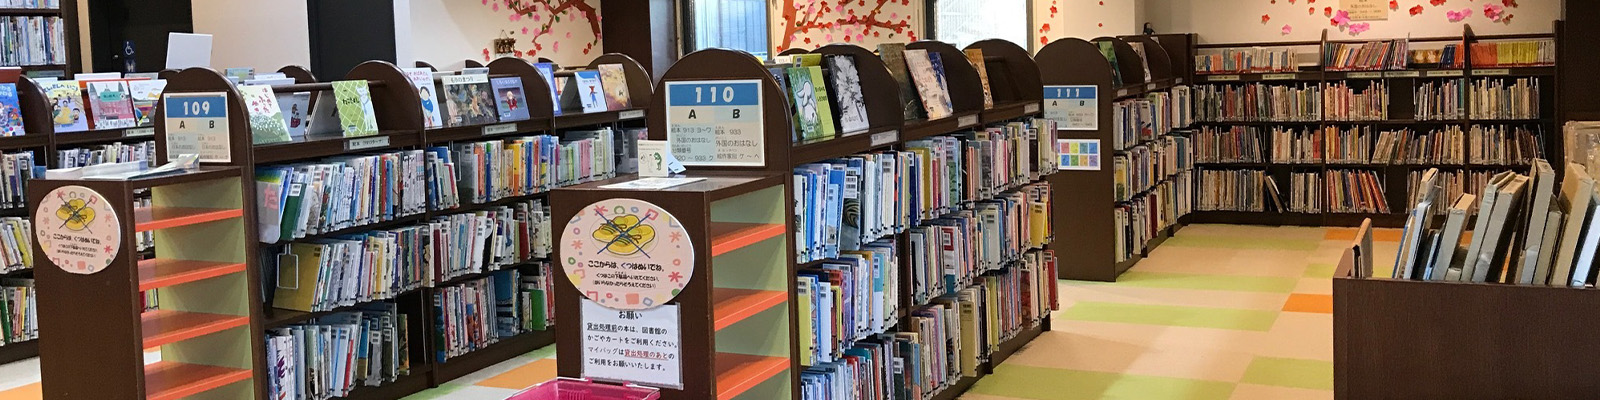 軽井沢町立図書館内の様子3